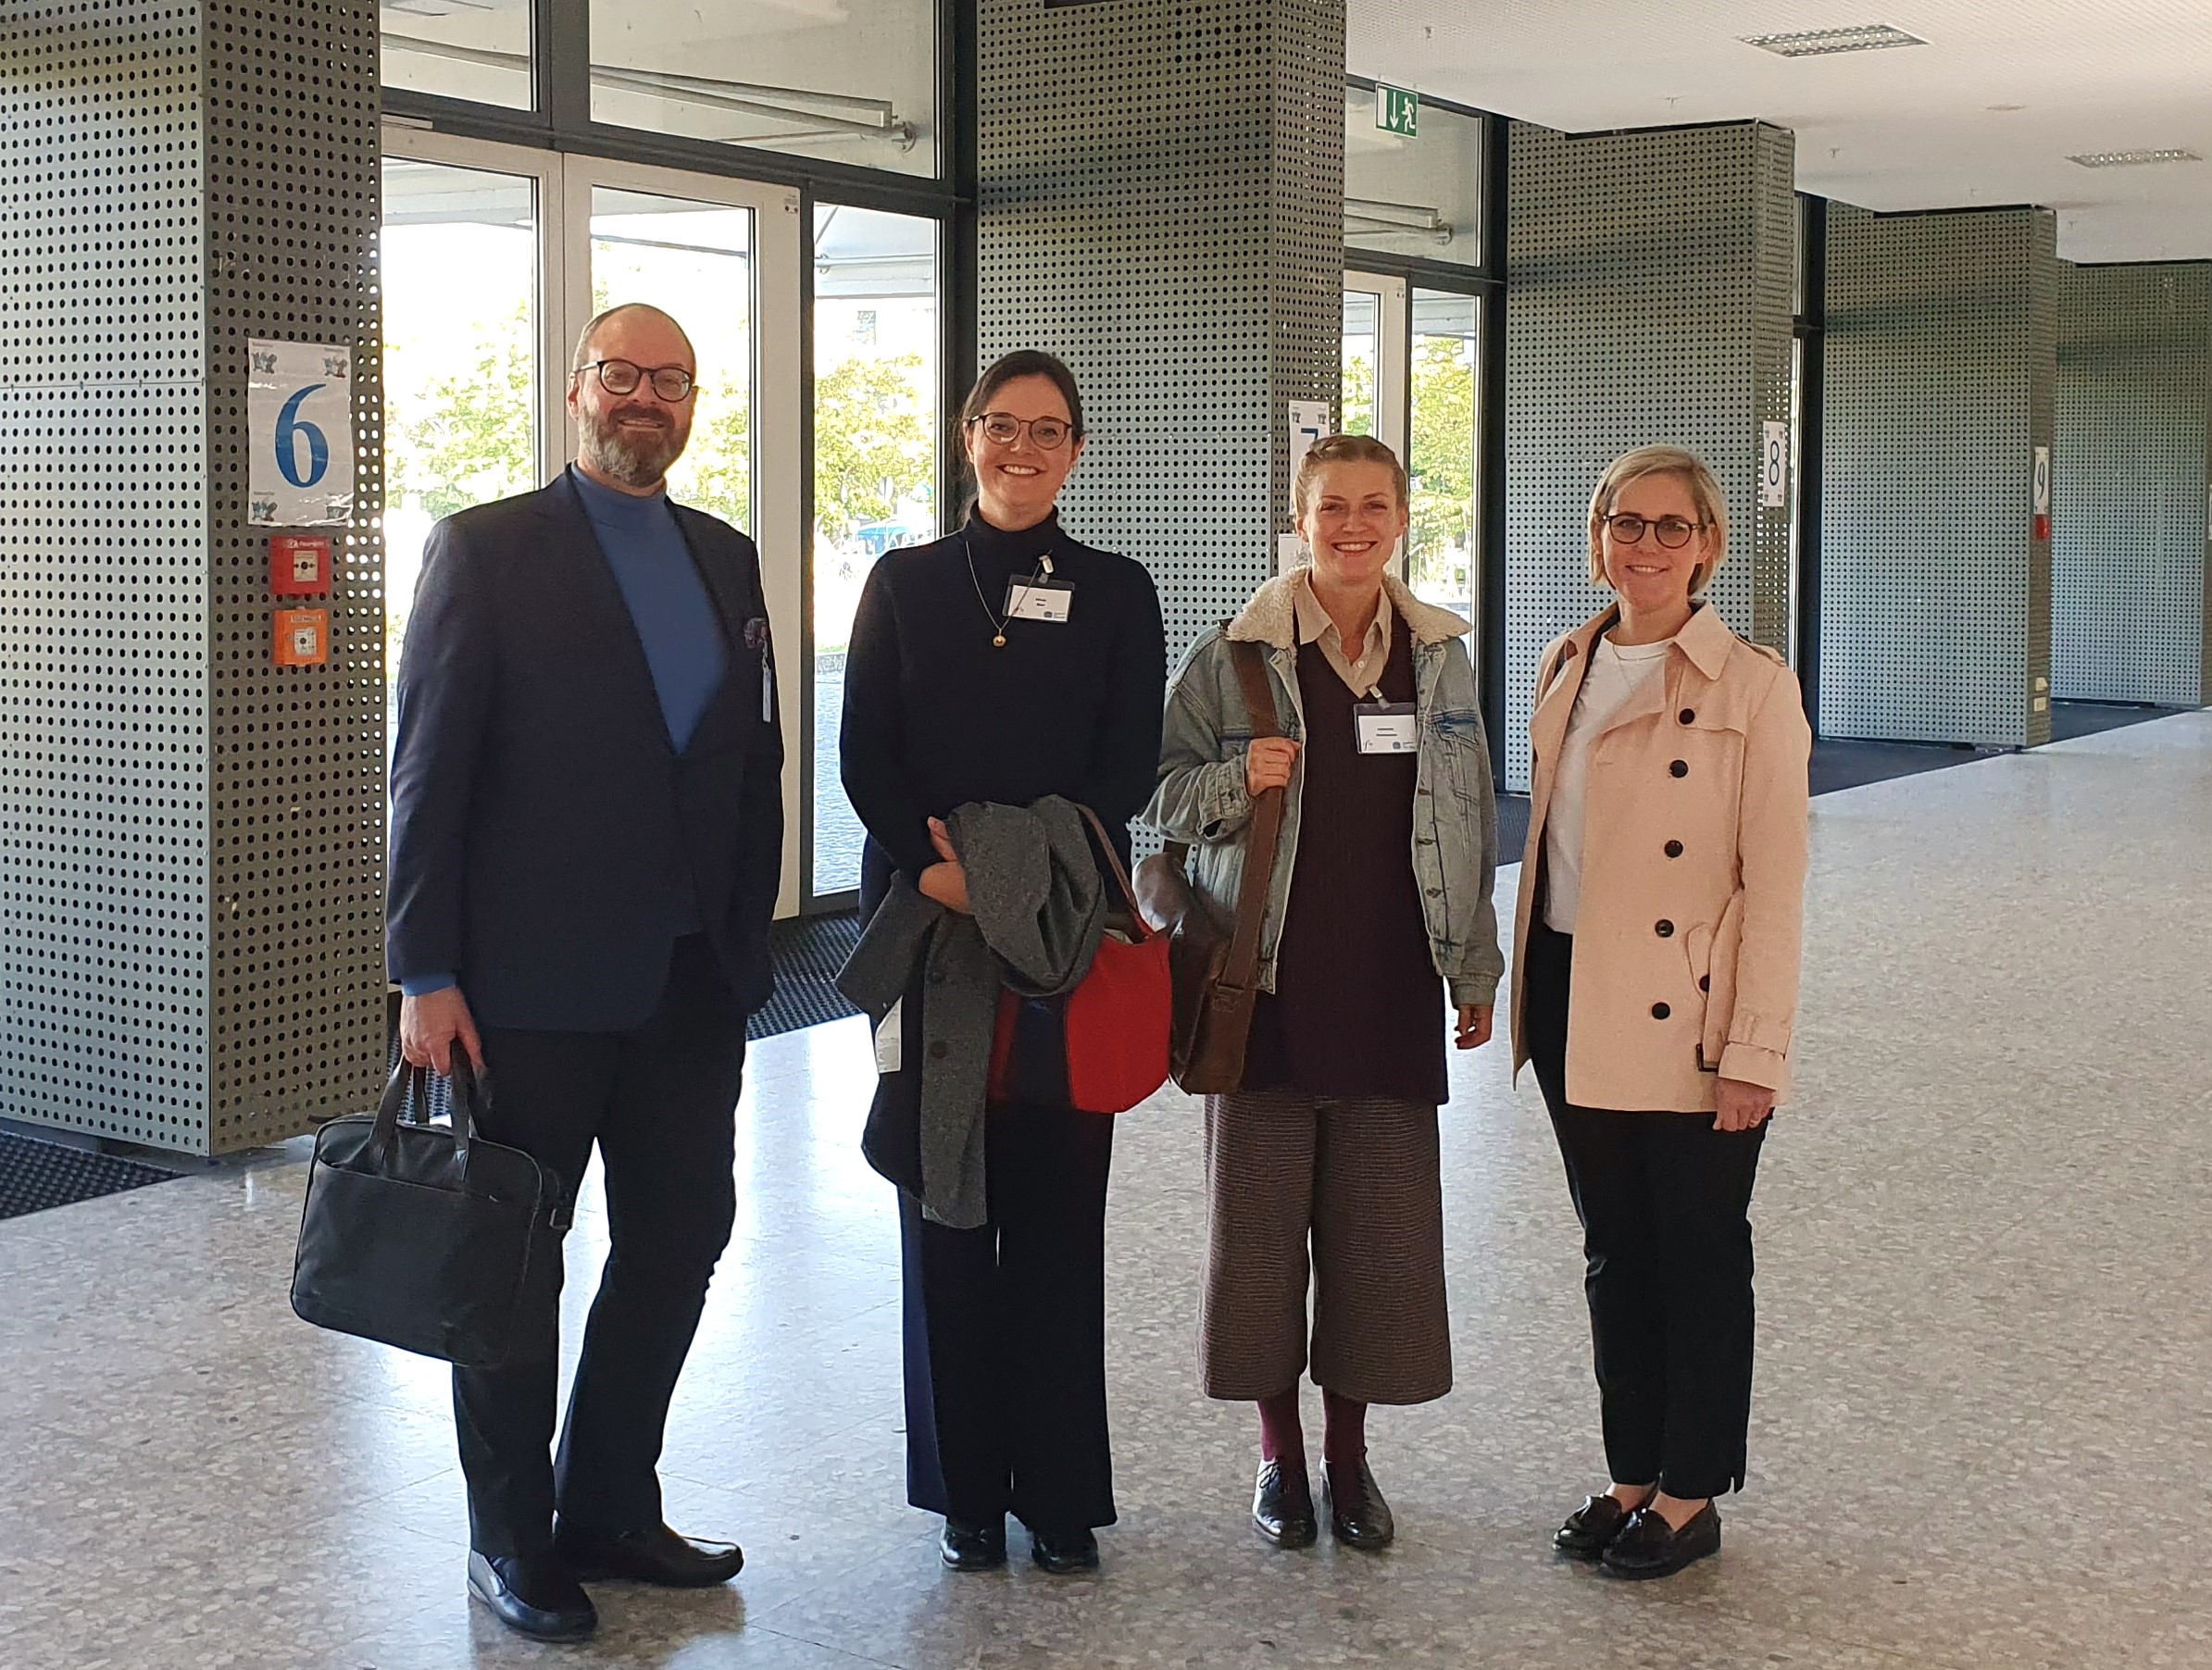 Daniel Reupke, Dr. Silvia Bier, Johanna Danhauser, Dr. Elisabeth van Treeck auf der Jahrestagung der GfM in Saarbrücken